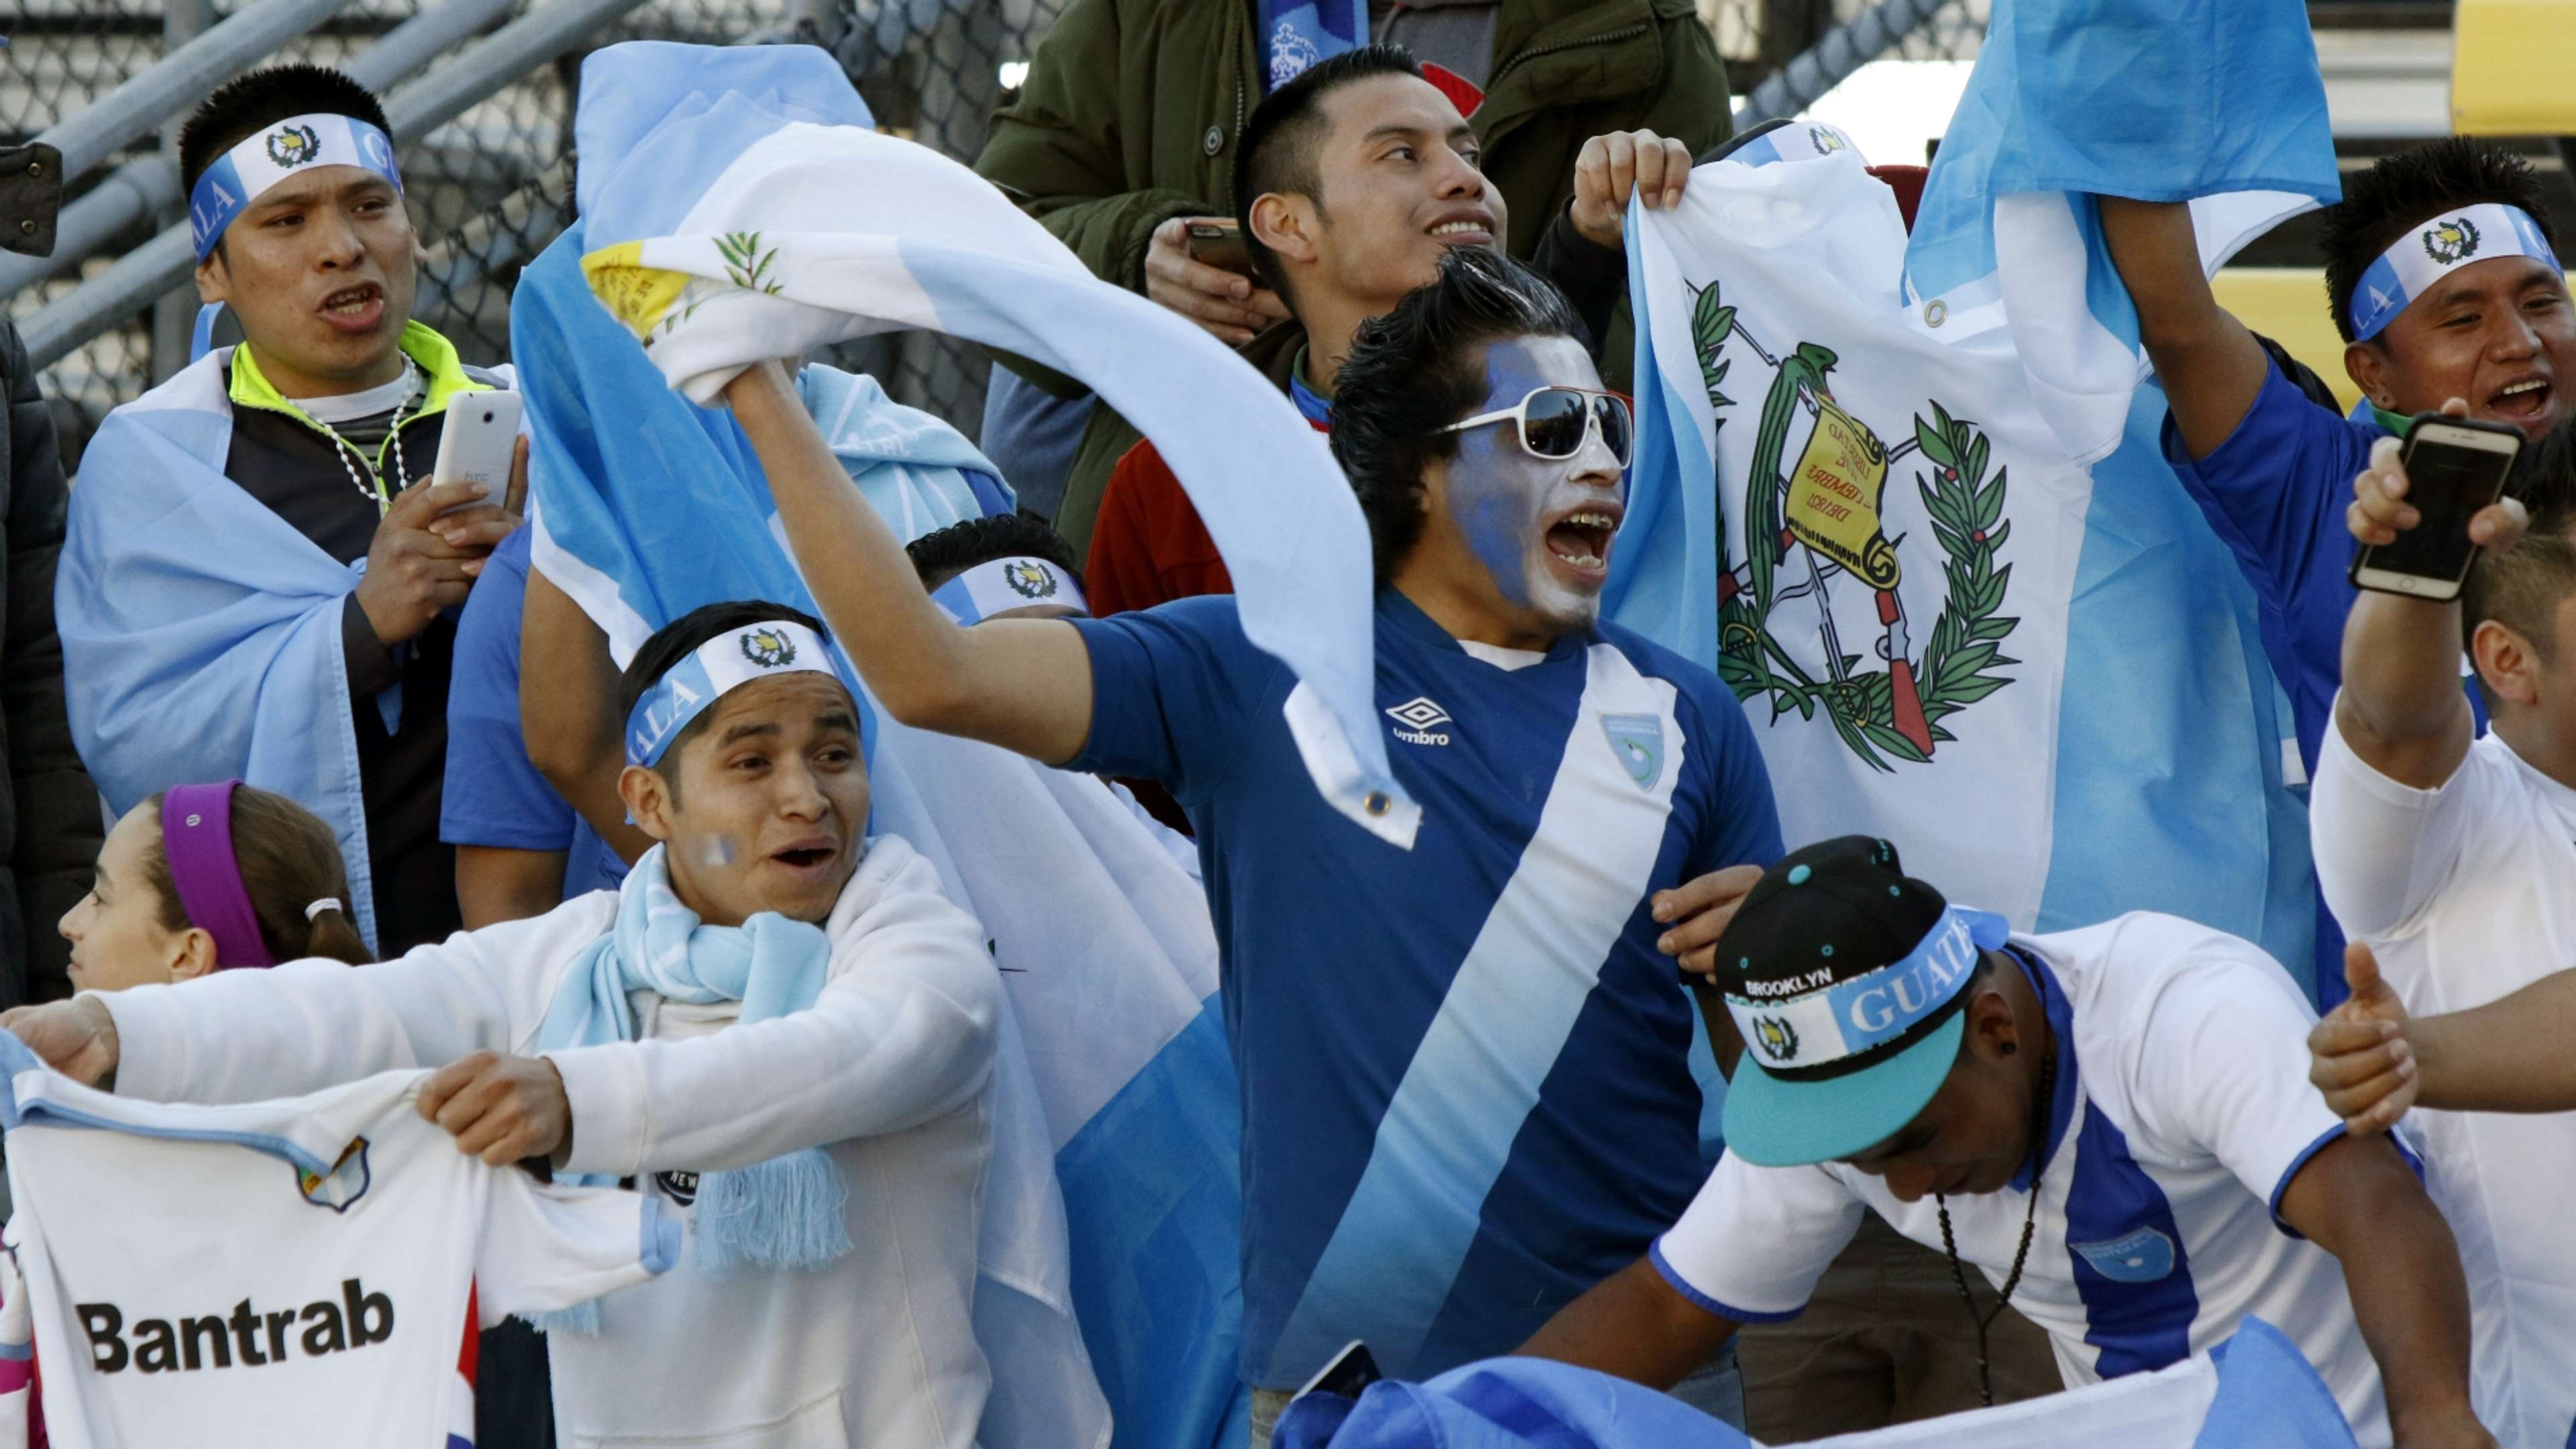 Guatemala fans